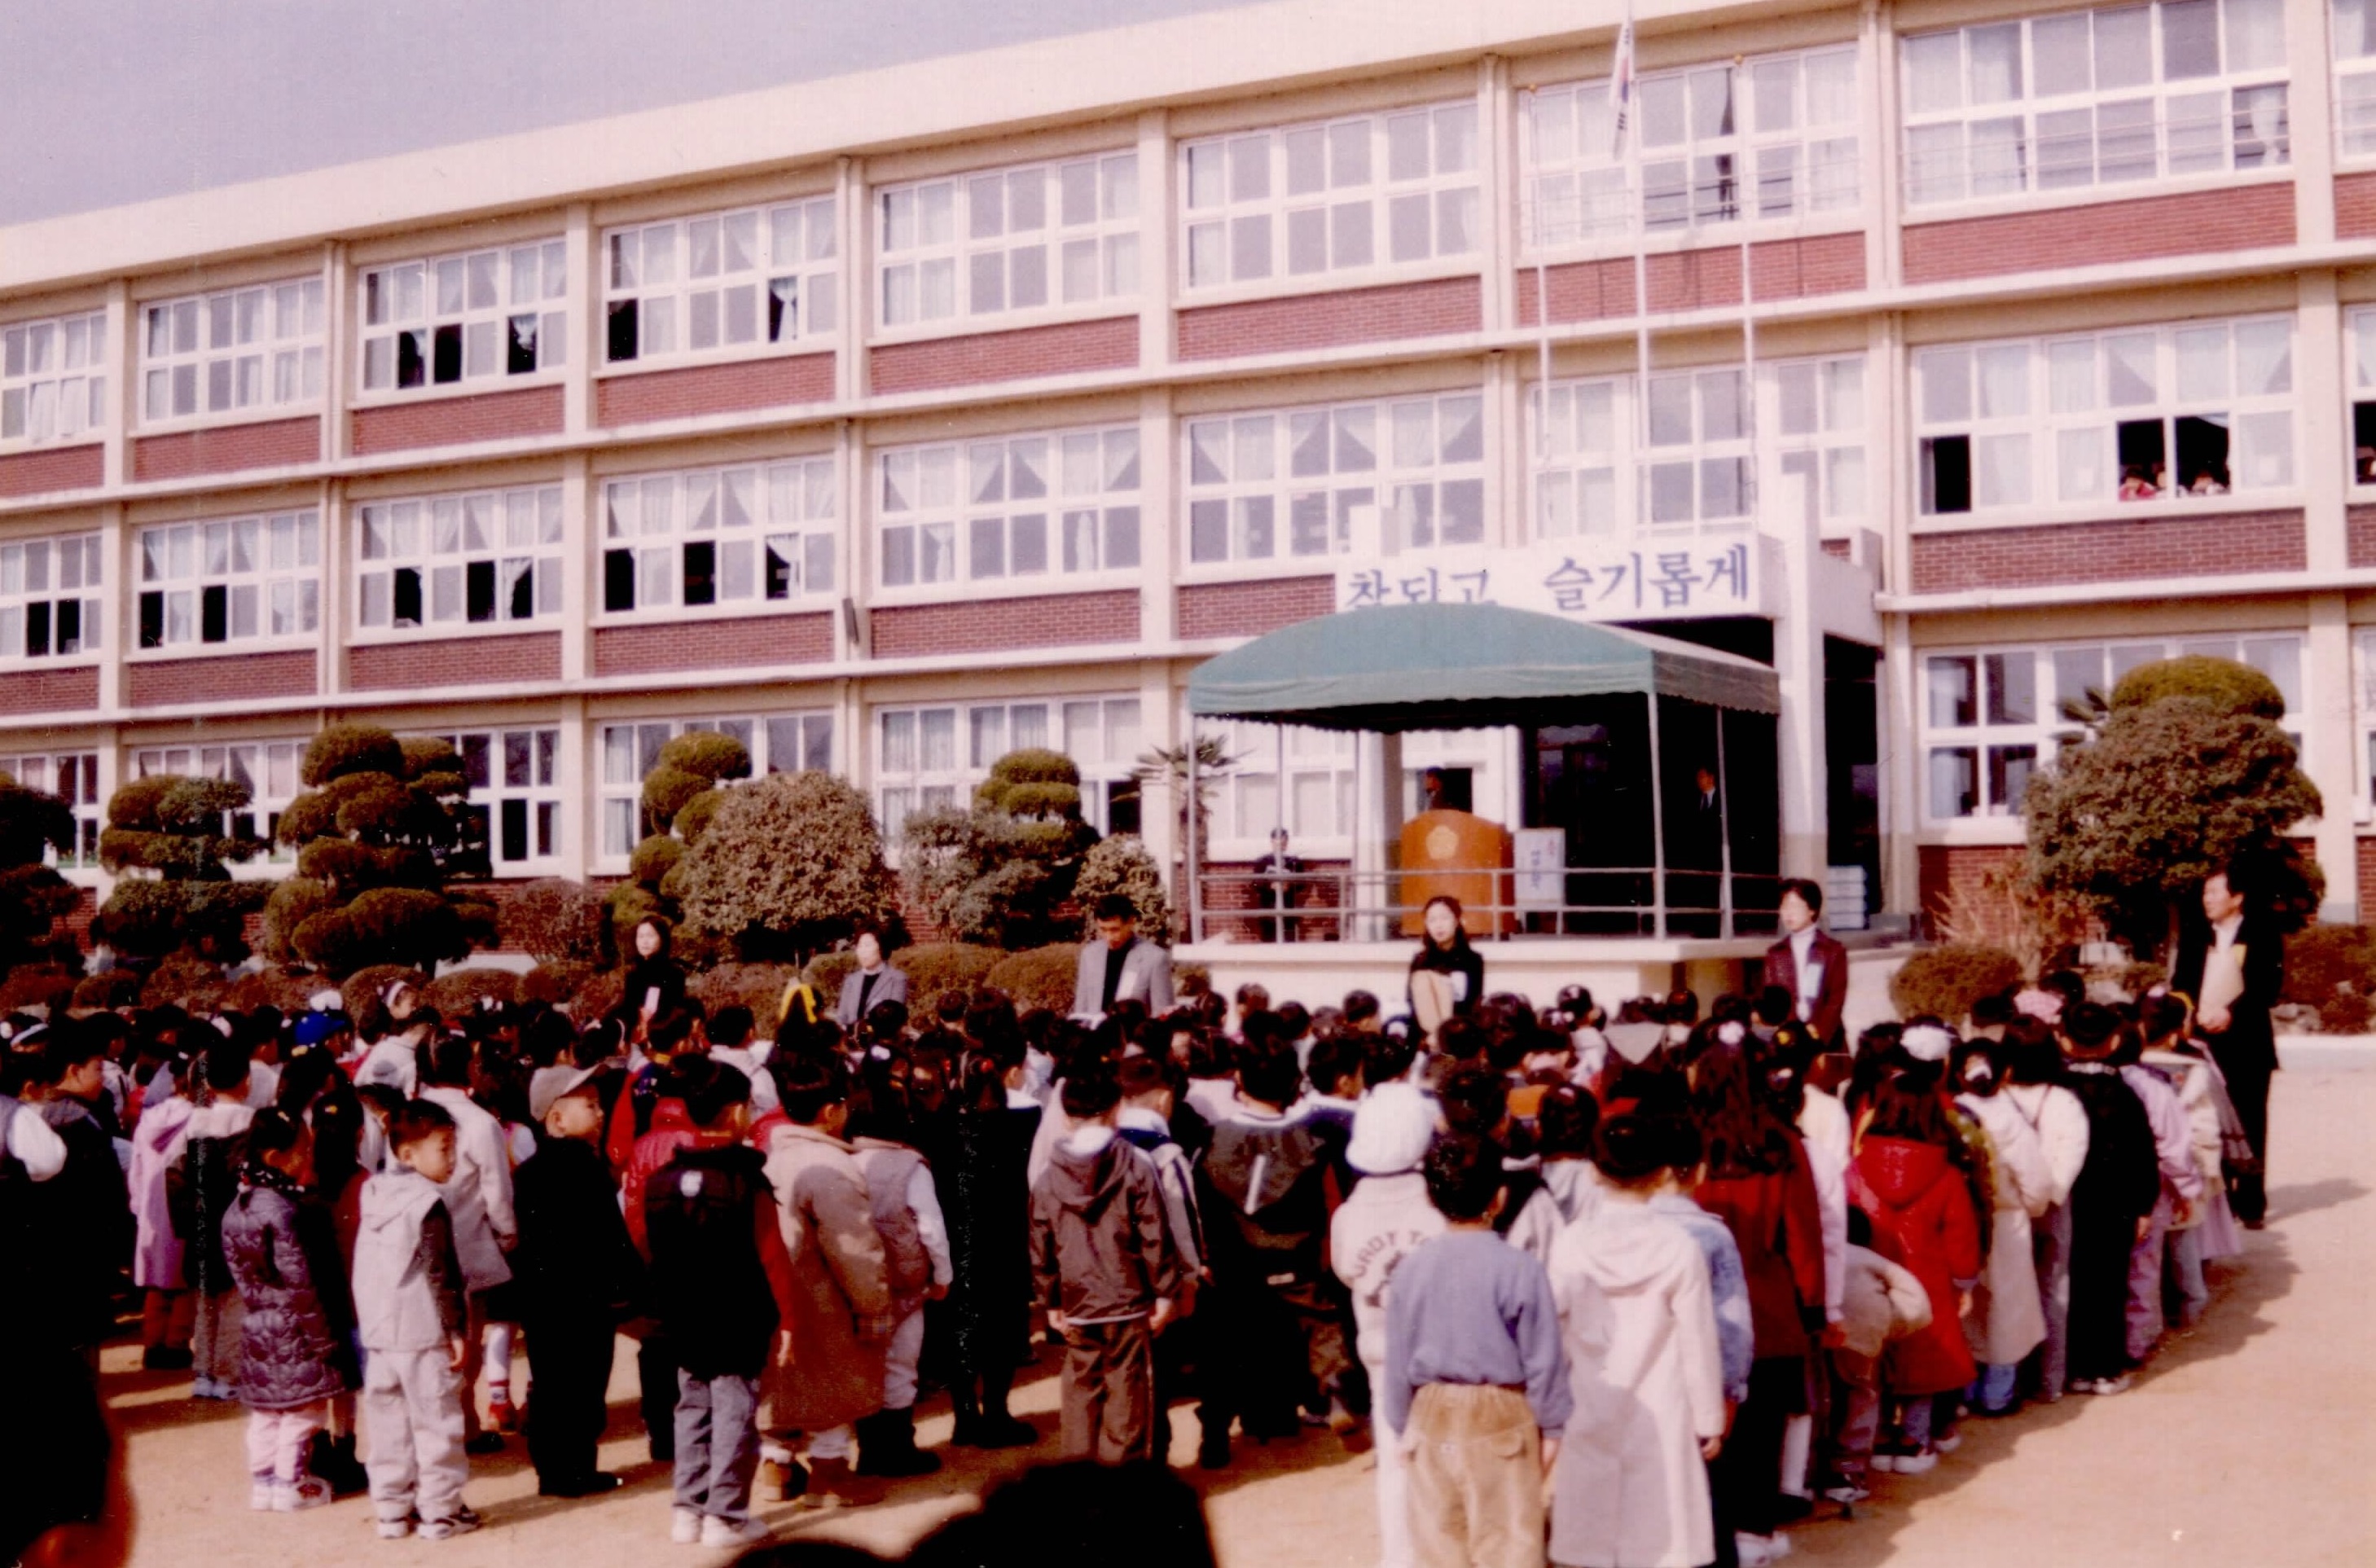 
															
															
																
																	신방초등학교 입학식 - 2000년 [1번째 이미지]
																
																
															
														